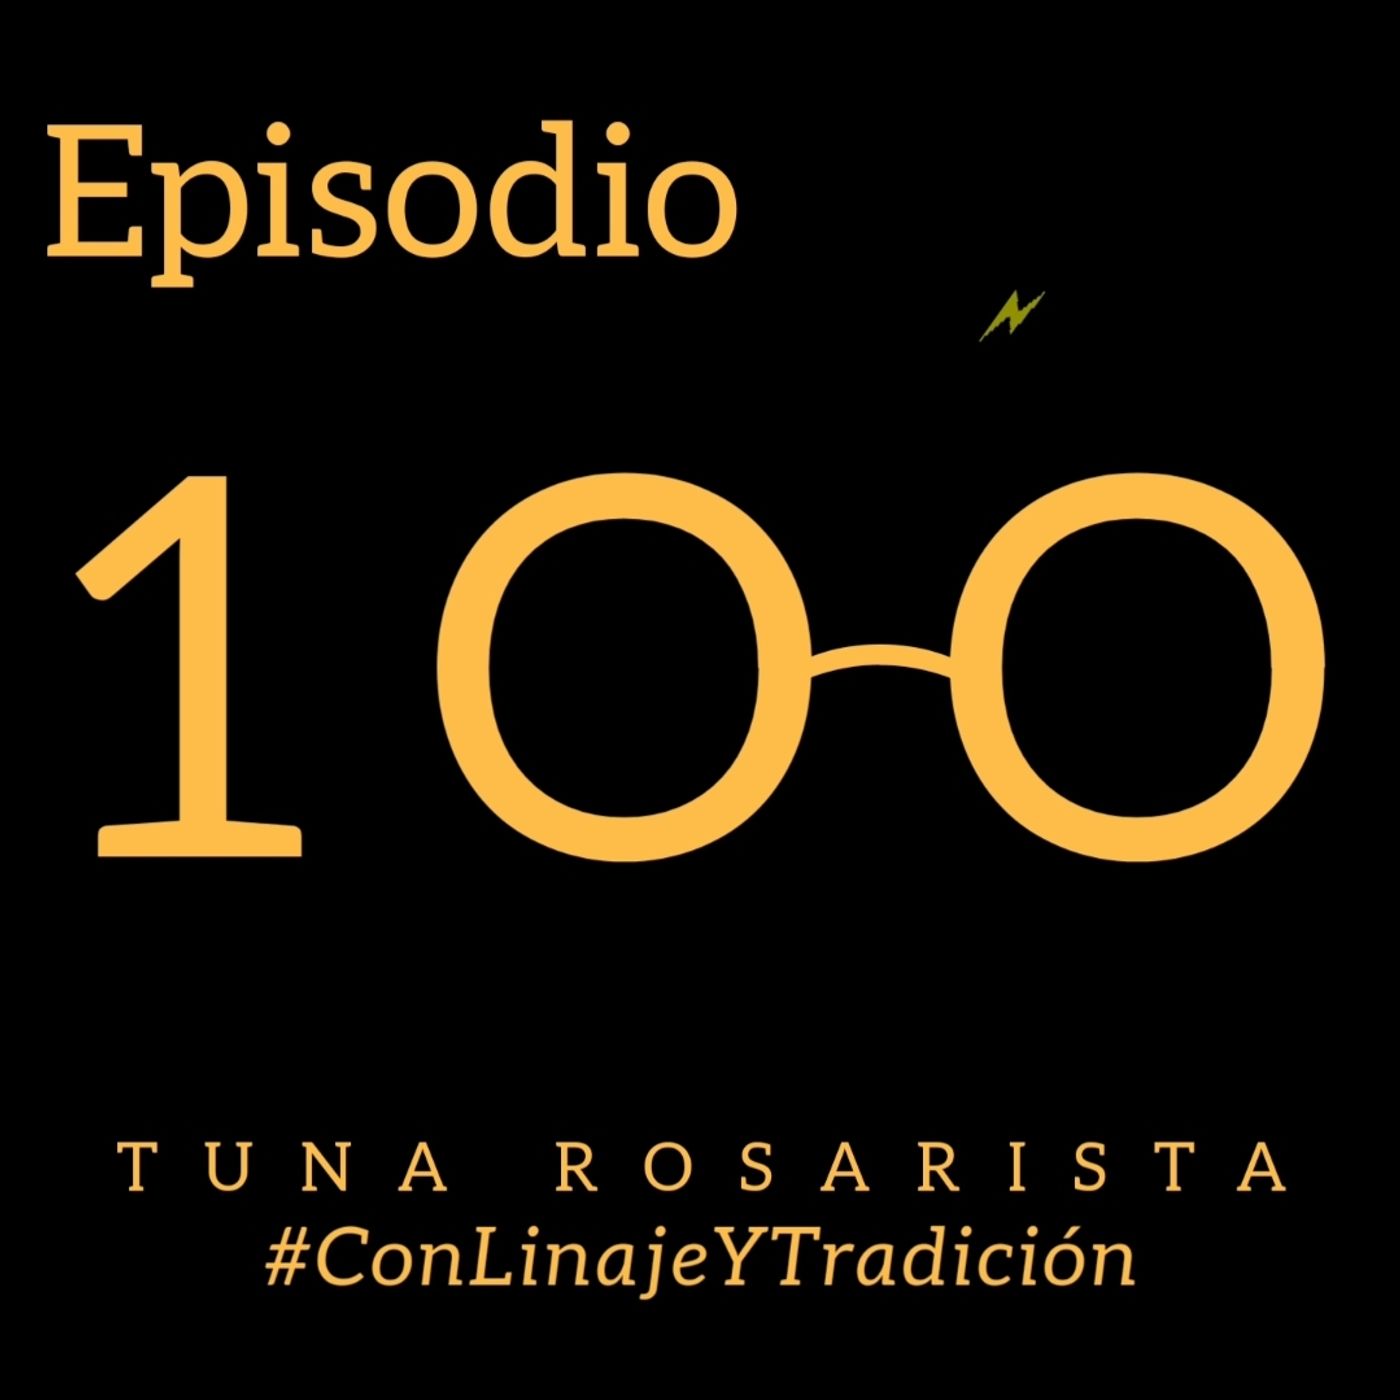 Episodio 100 #ConLinajeYTradición